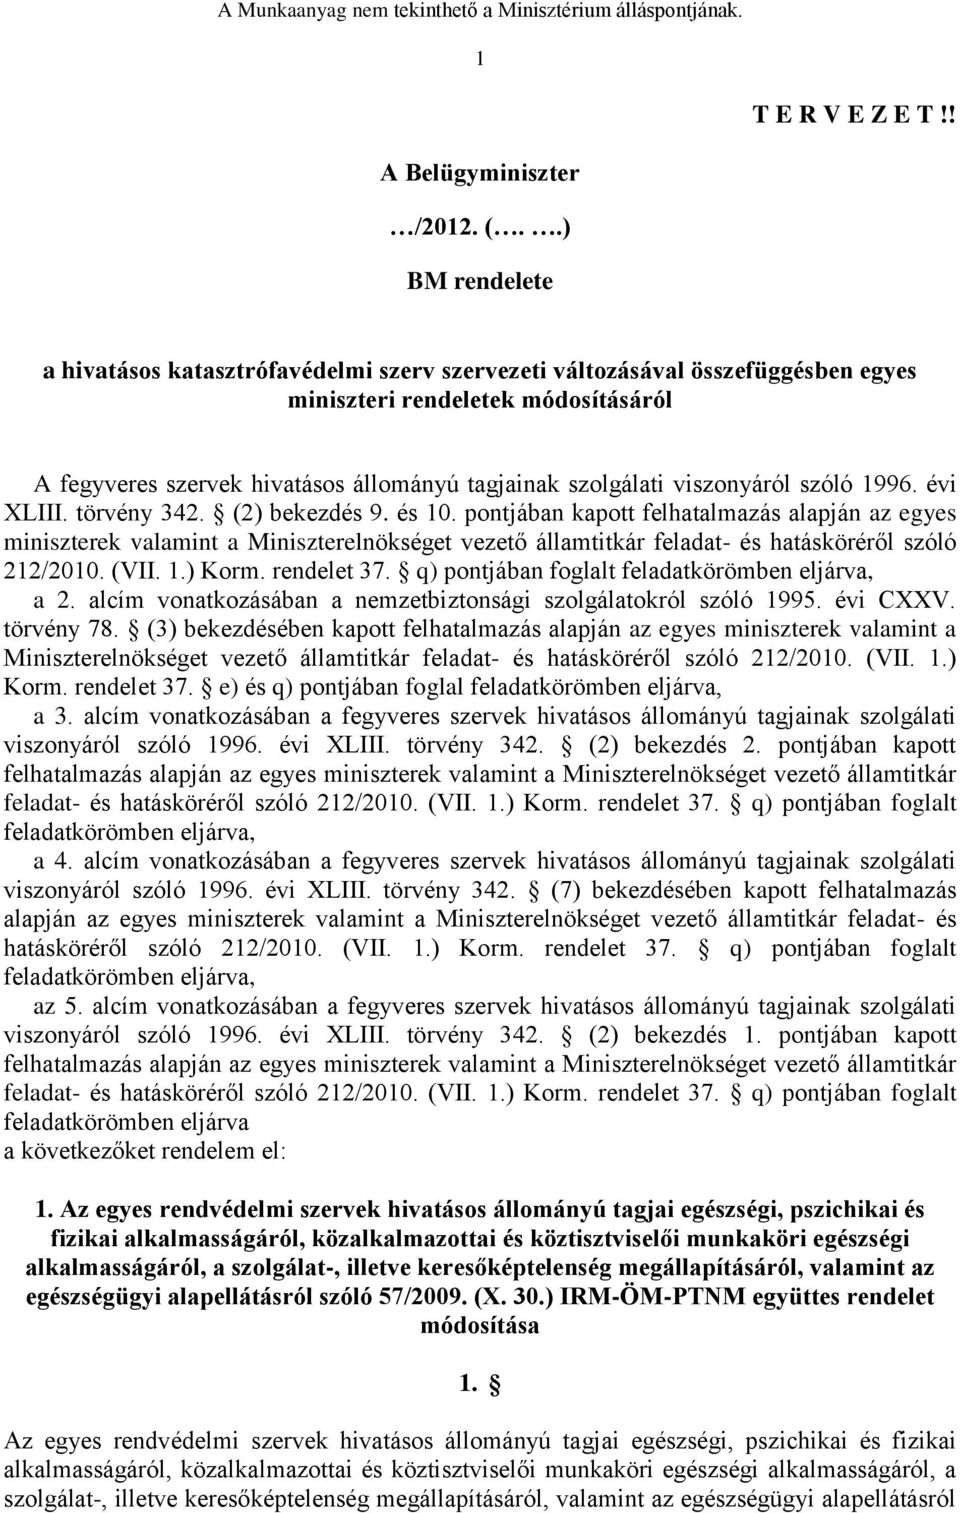 viszonyáról szóló 1996. évi XLIII. törvény 342. (2) bekezdés 9. és 10.